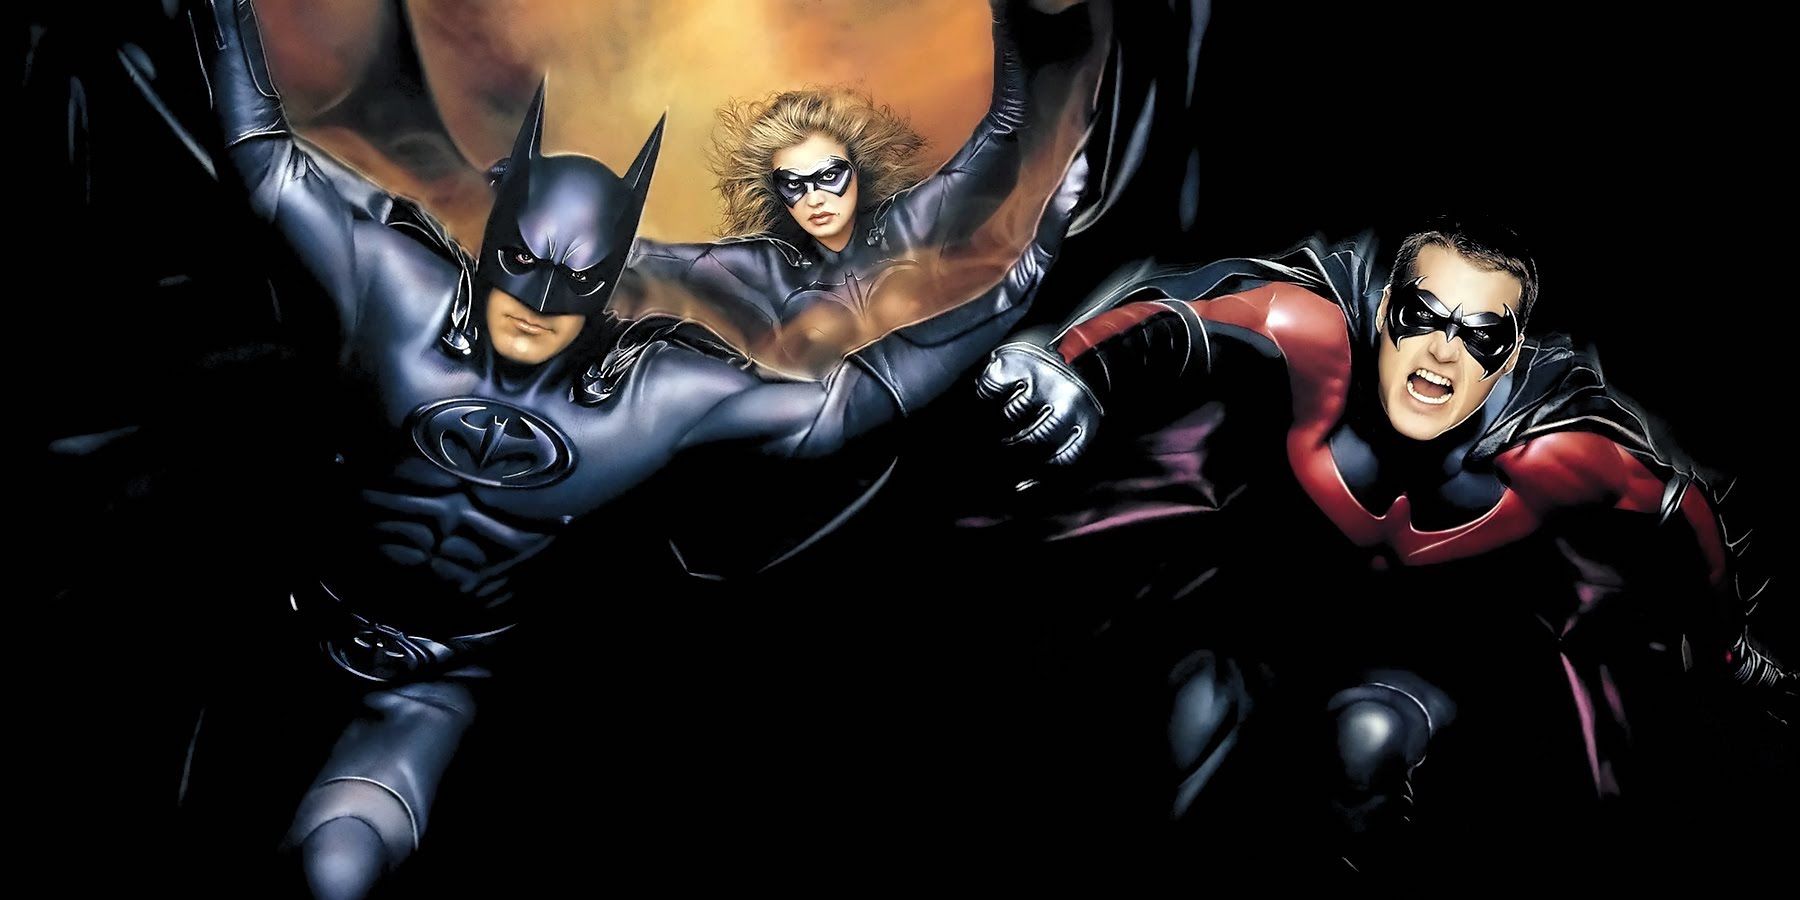 1- Batman & Robin